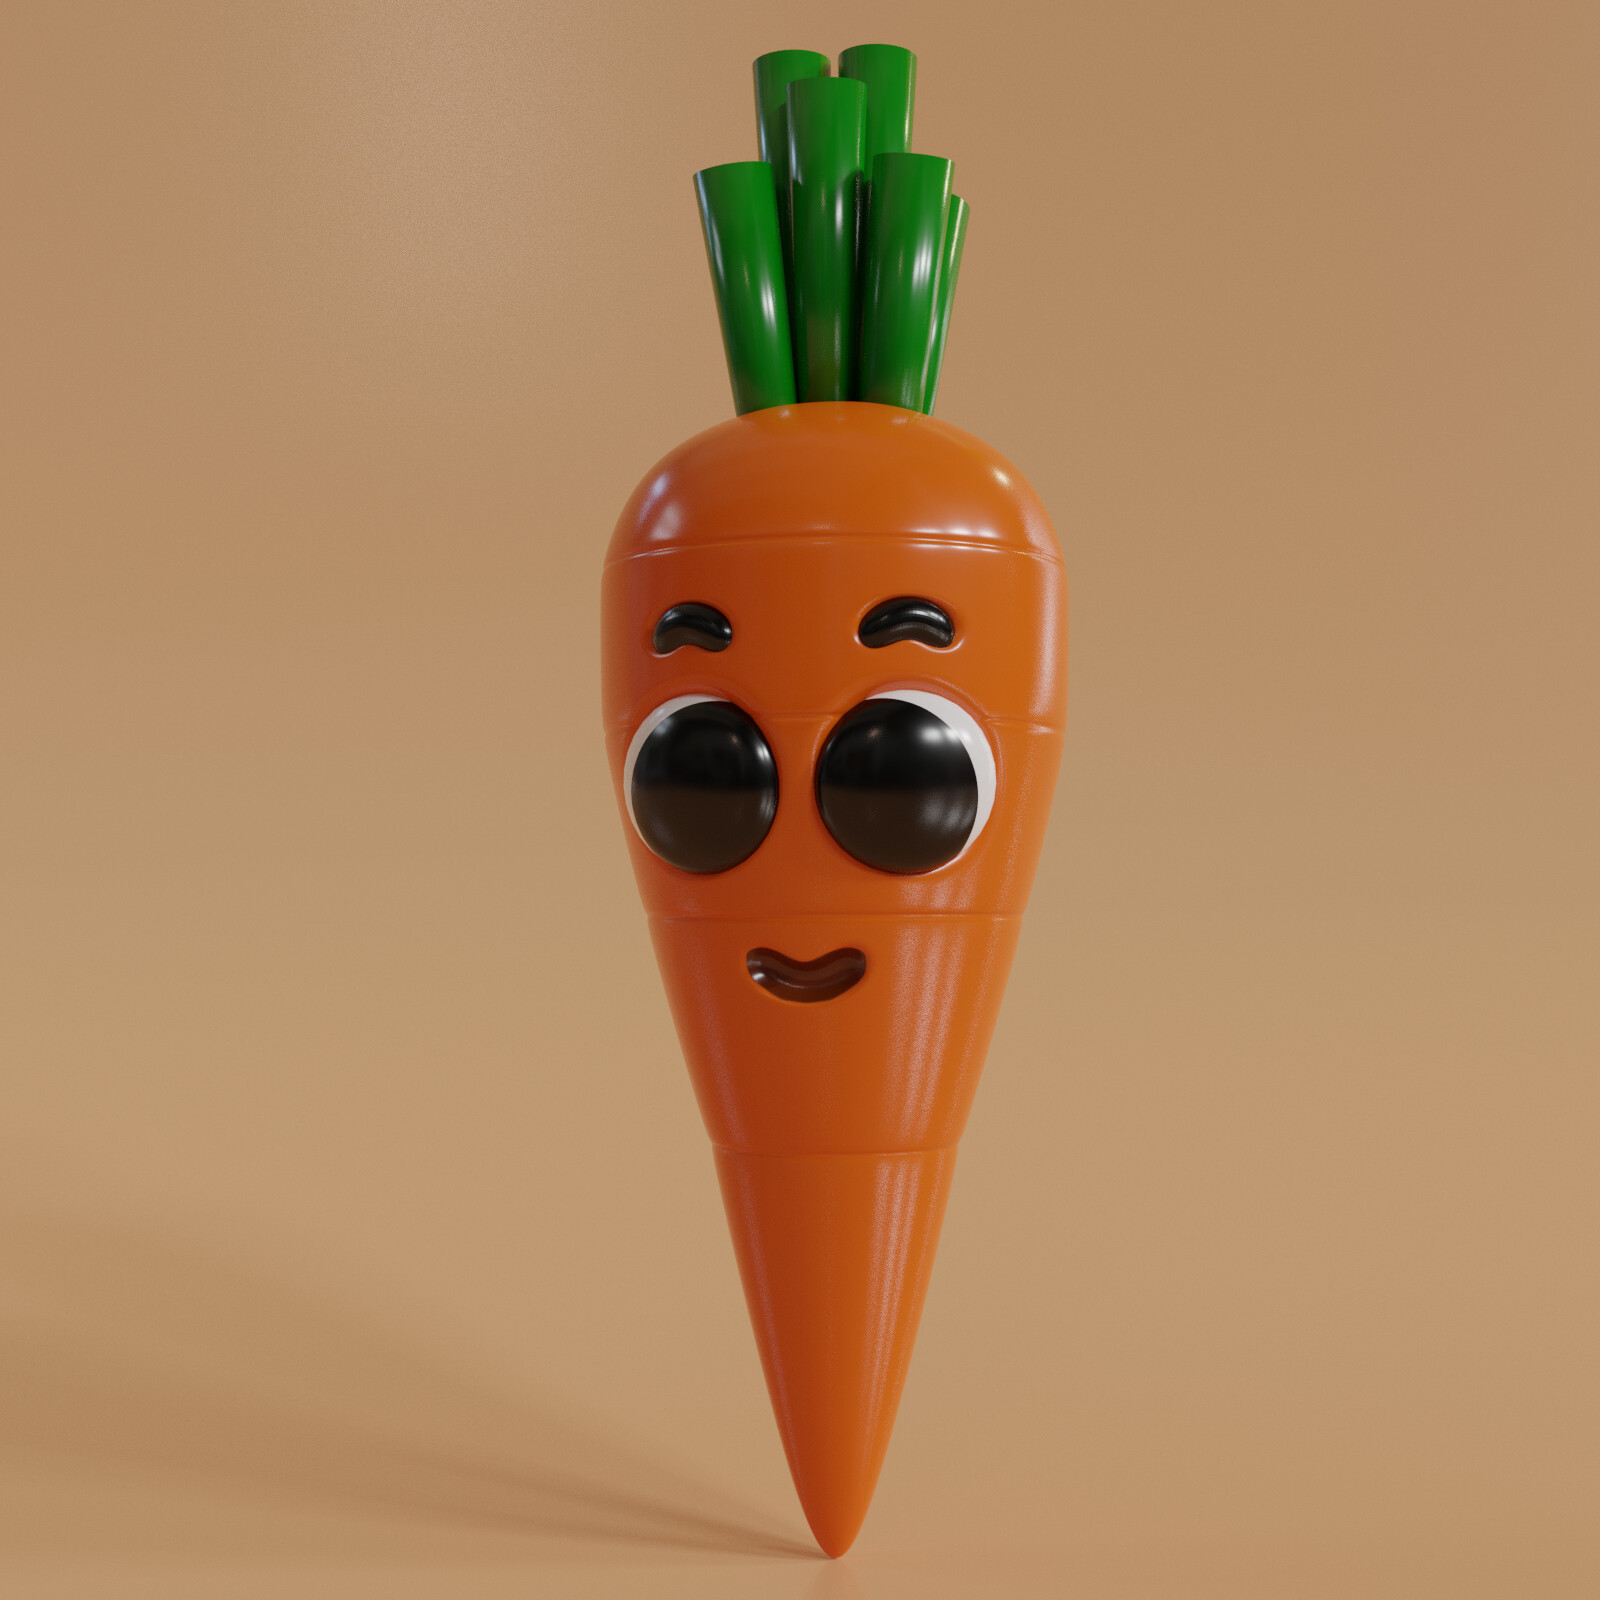 ArtStation - 3D Character Carrot